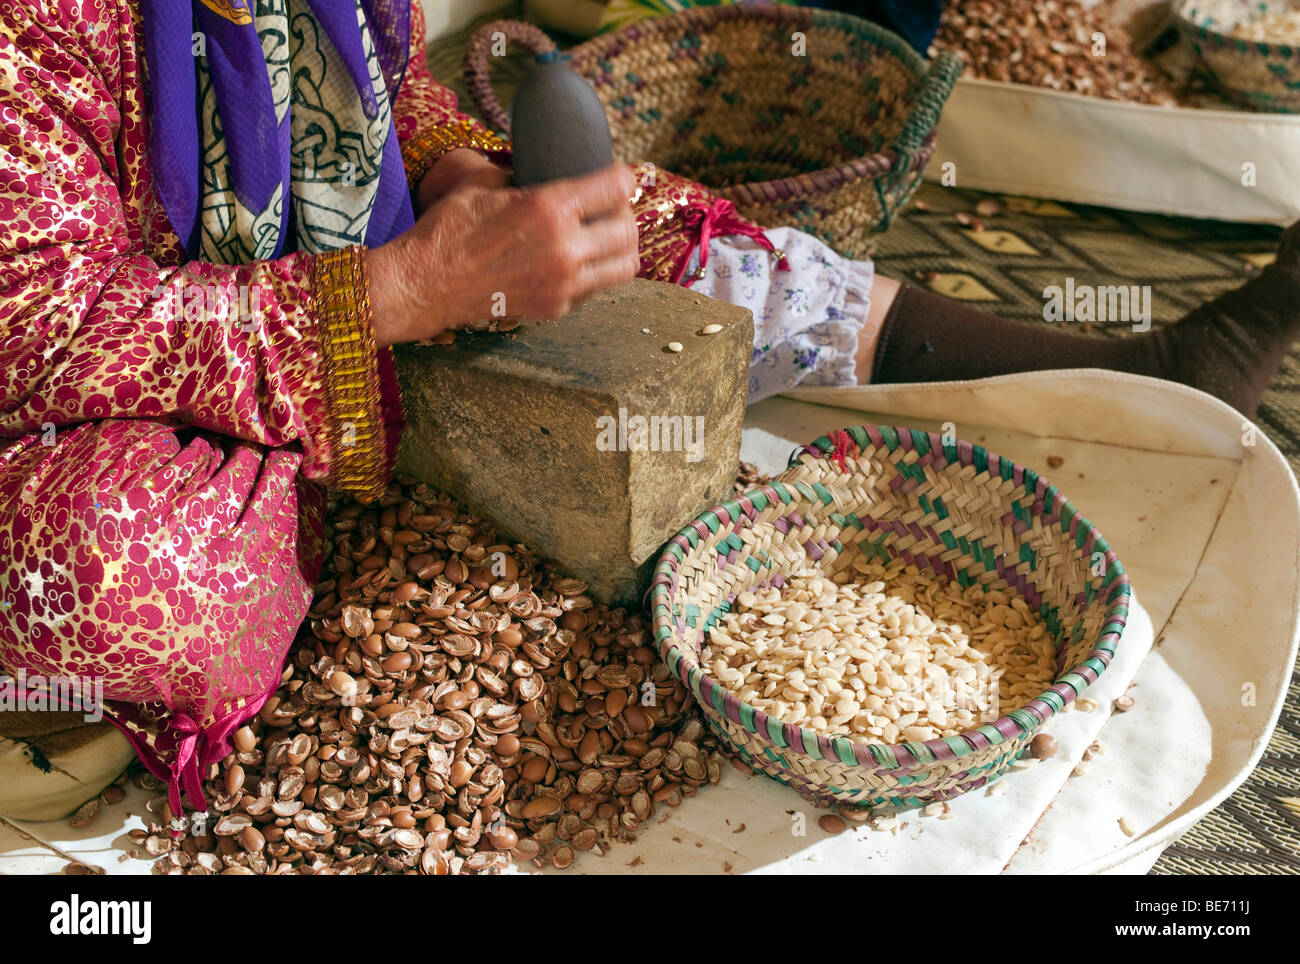 Production de l'huile d'Argan par les femmes marocaines, Maroc, Afrique Banque D'Images